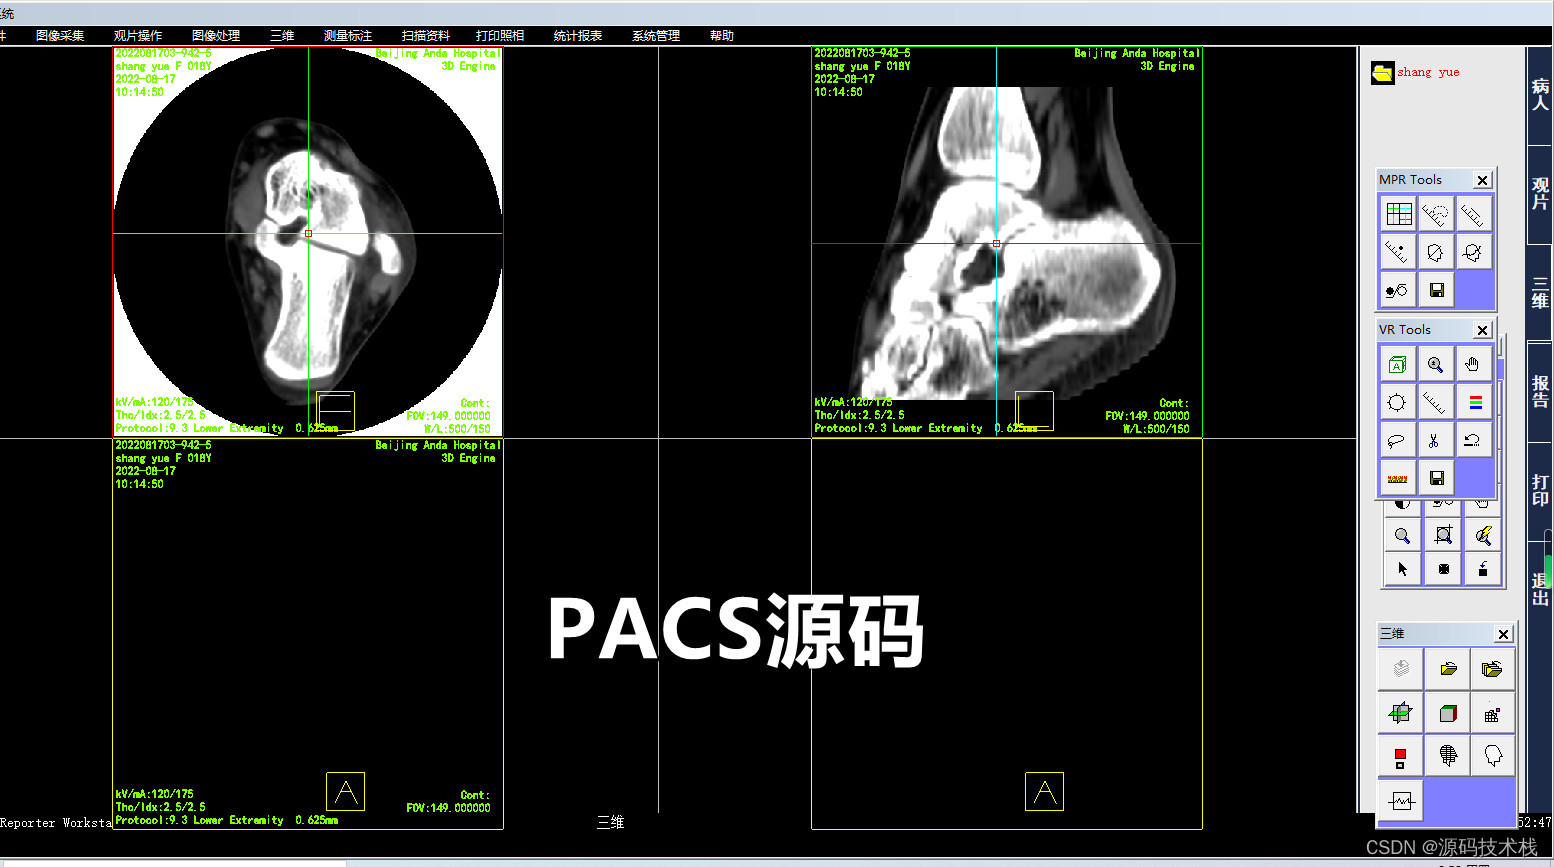 数字化医院PACS影像系统 三维影像后处理技术应用